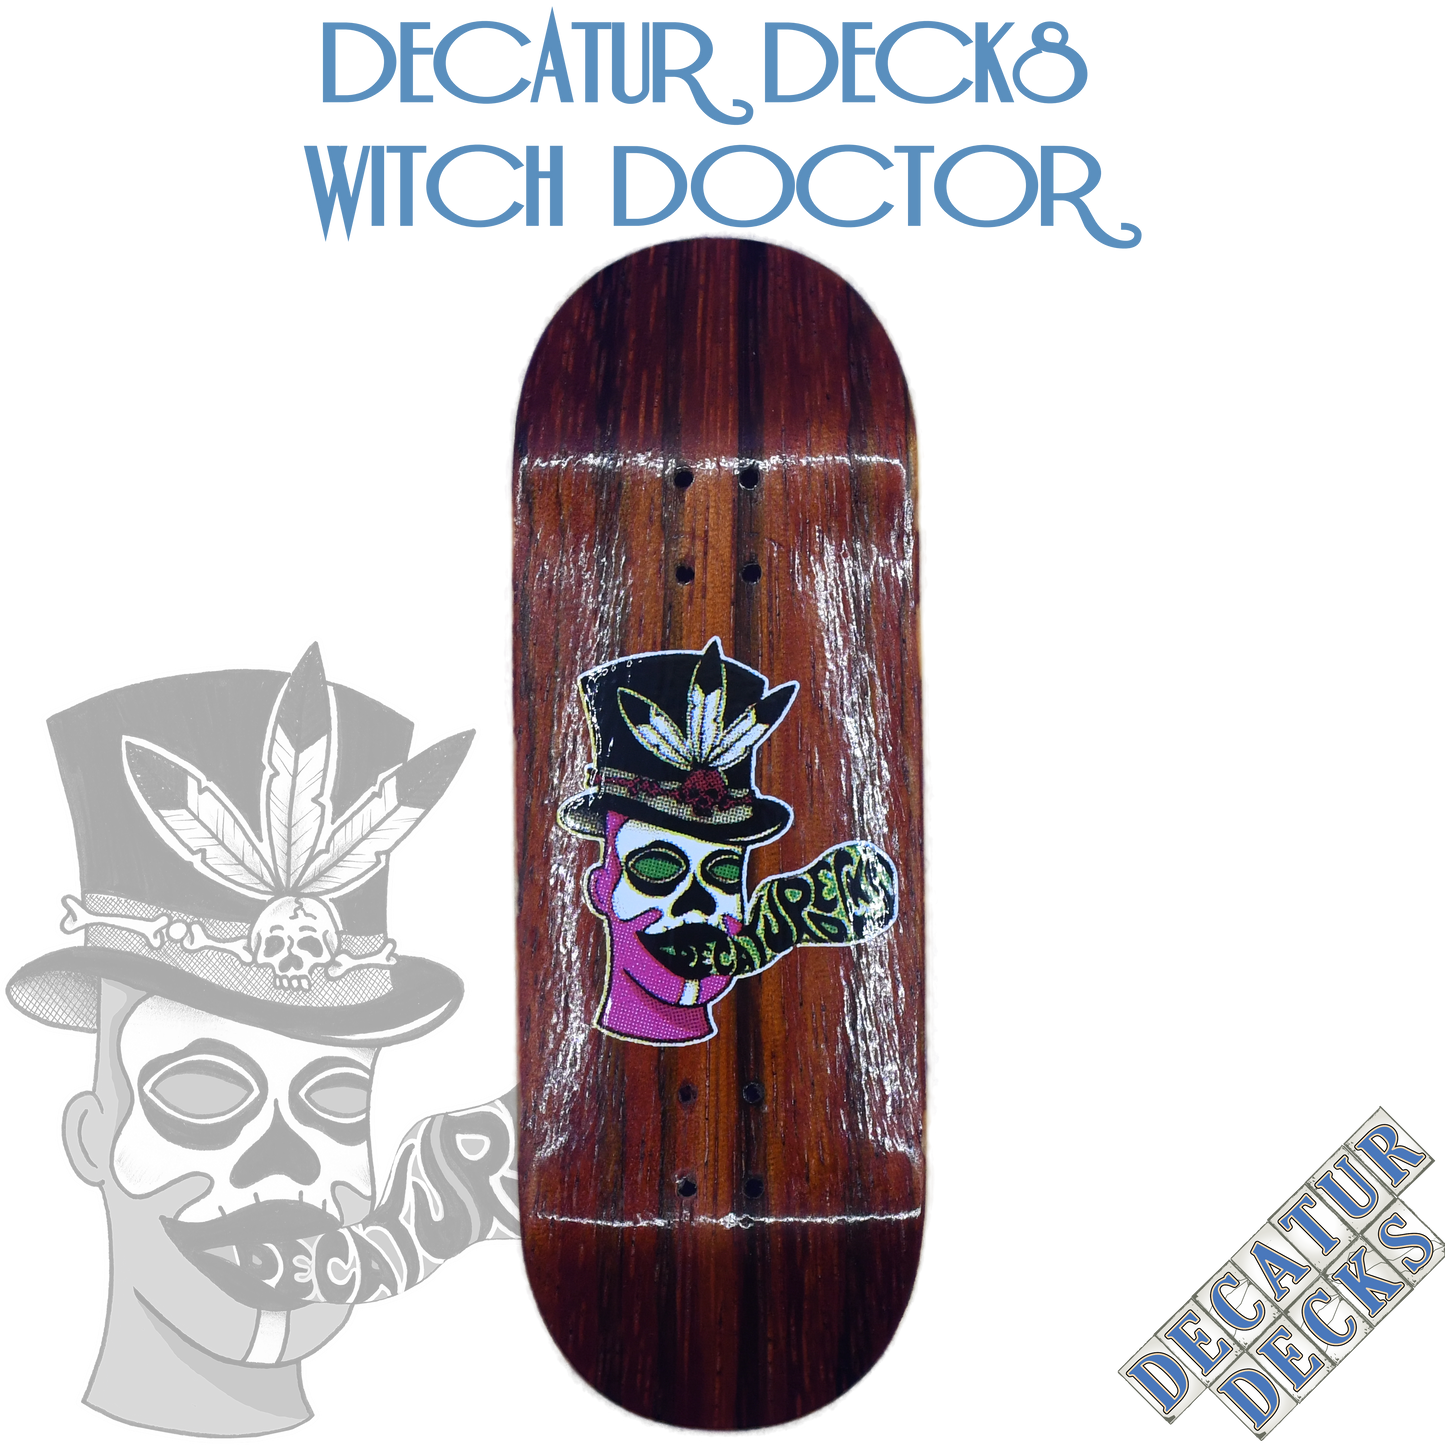 DECATUR DECKS - WITCH DOCTOR